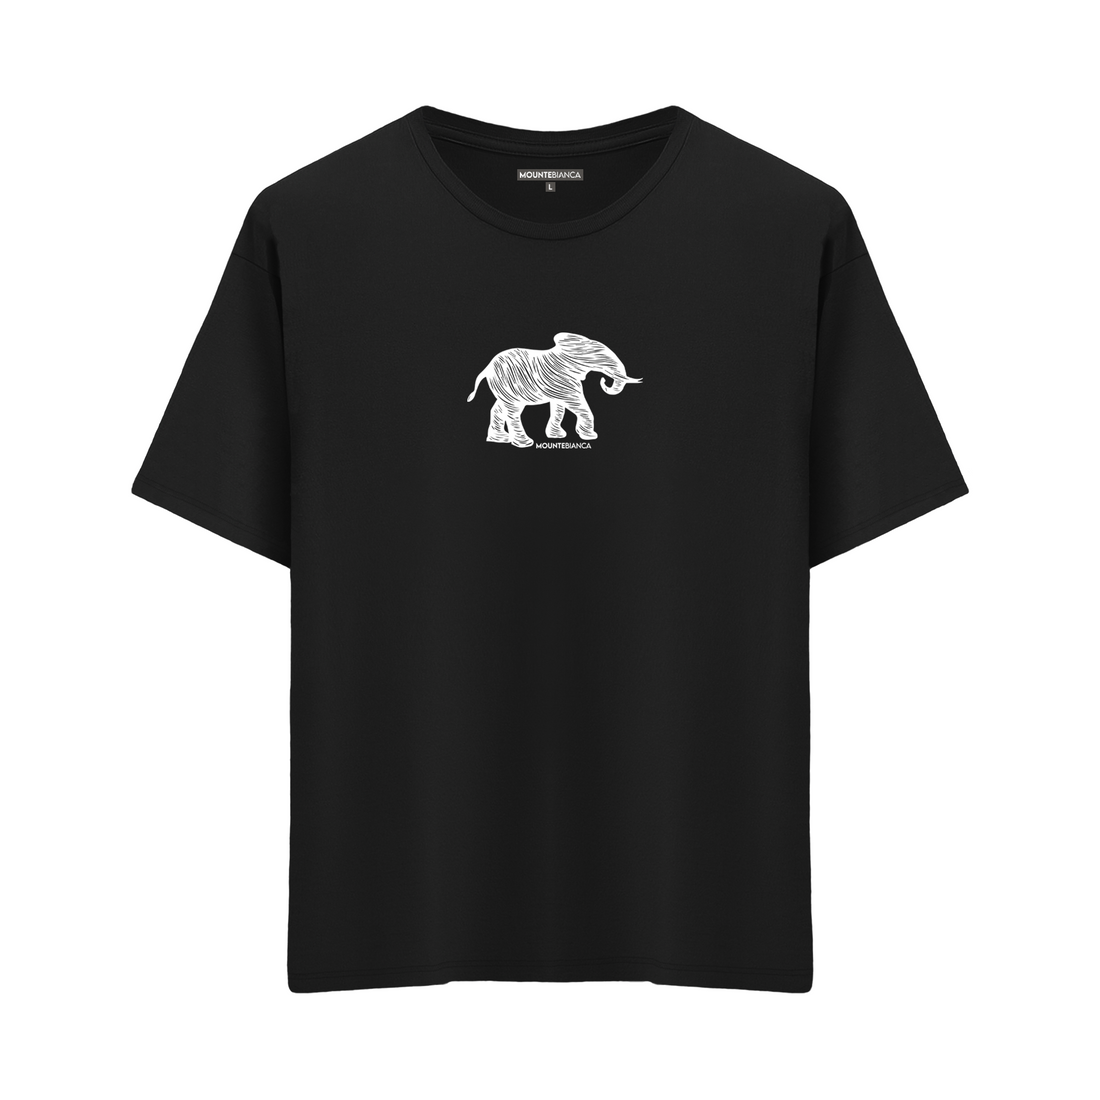 Elephant - Oversize T-shirt